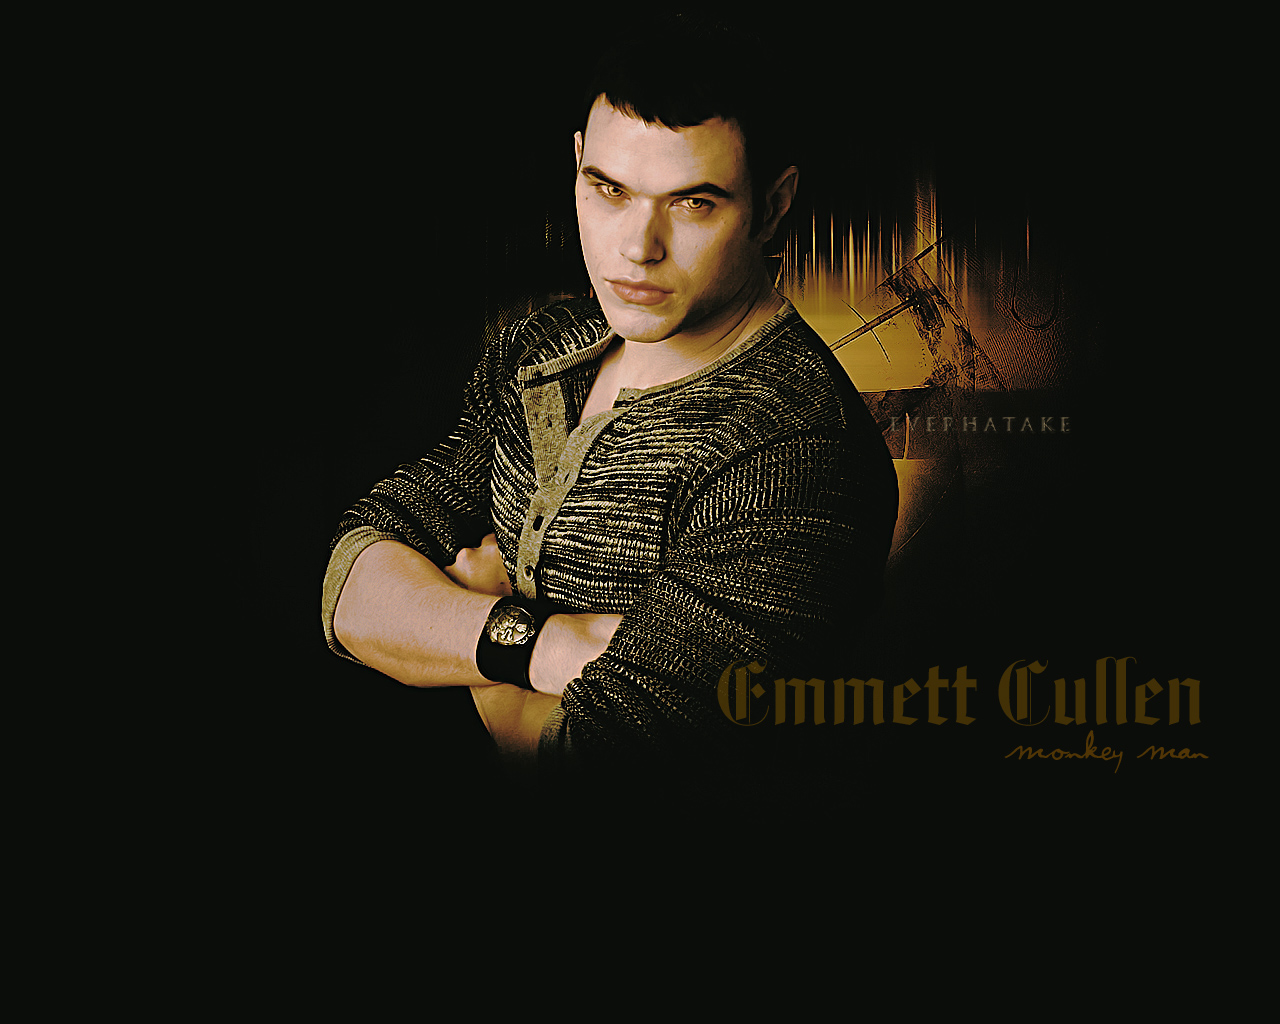 Emmett Cullen By Everhatake